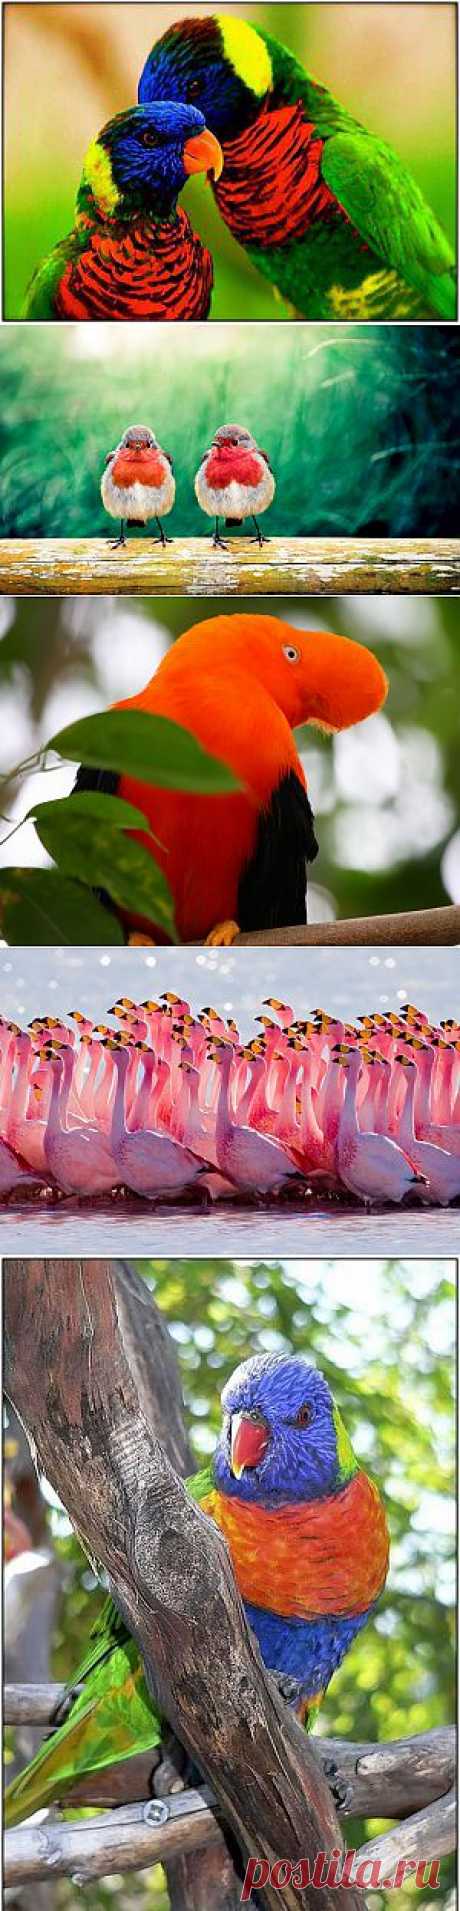 Красочный мир птиц | Мир в цвете: позитивное мышление, истории успеха, радости жизни